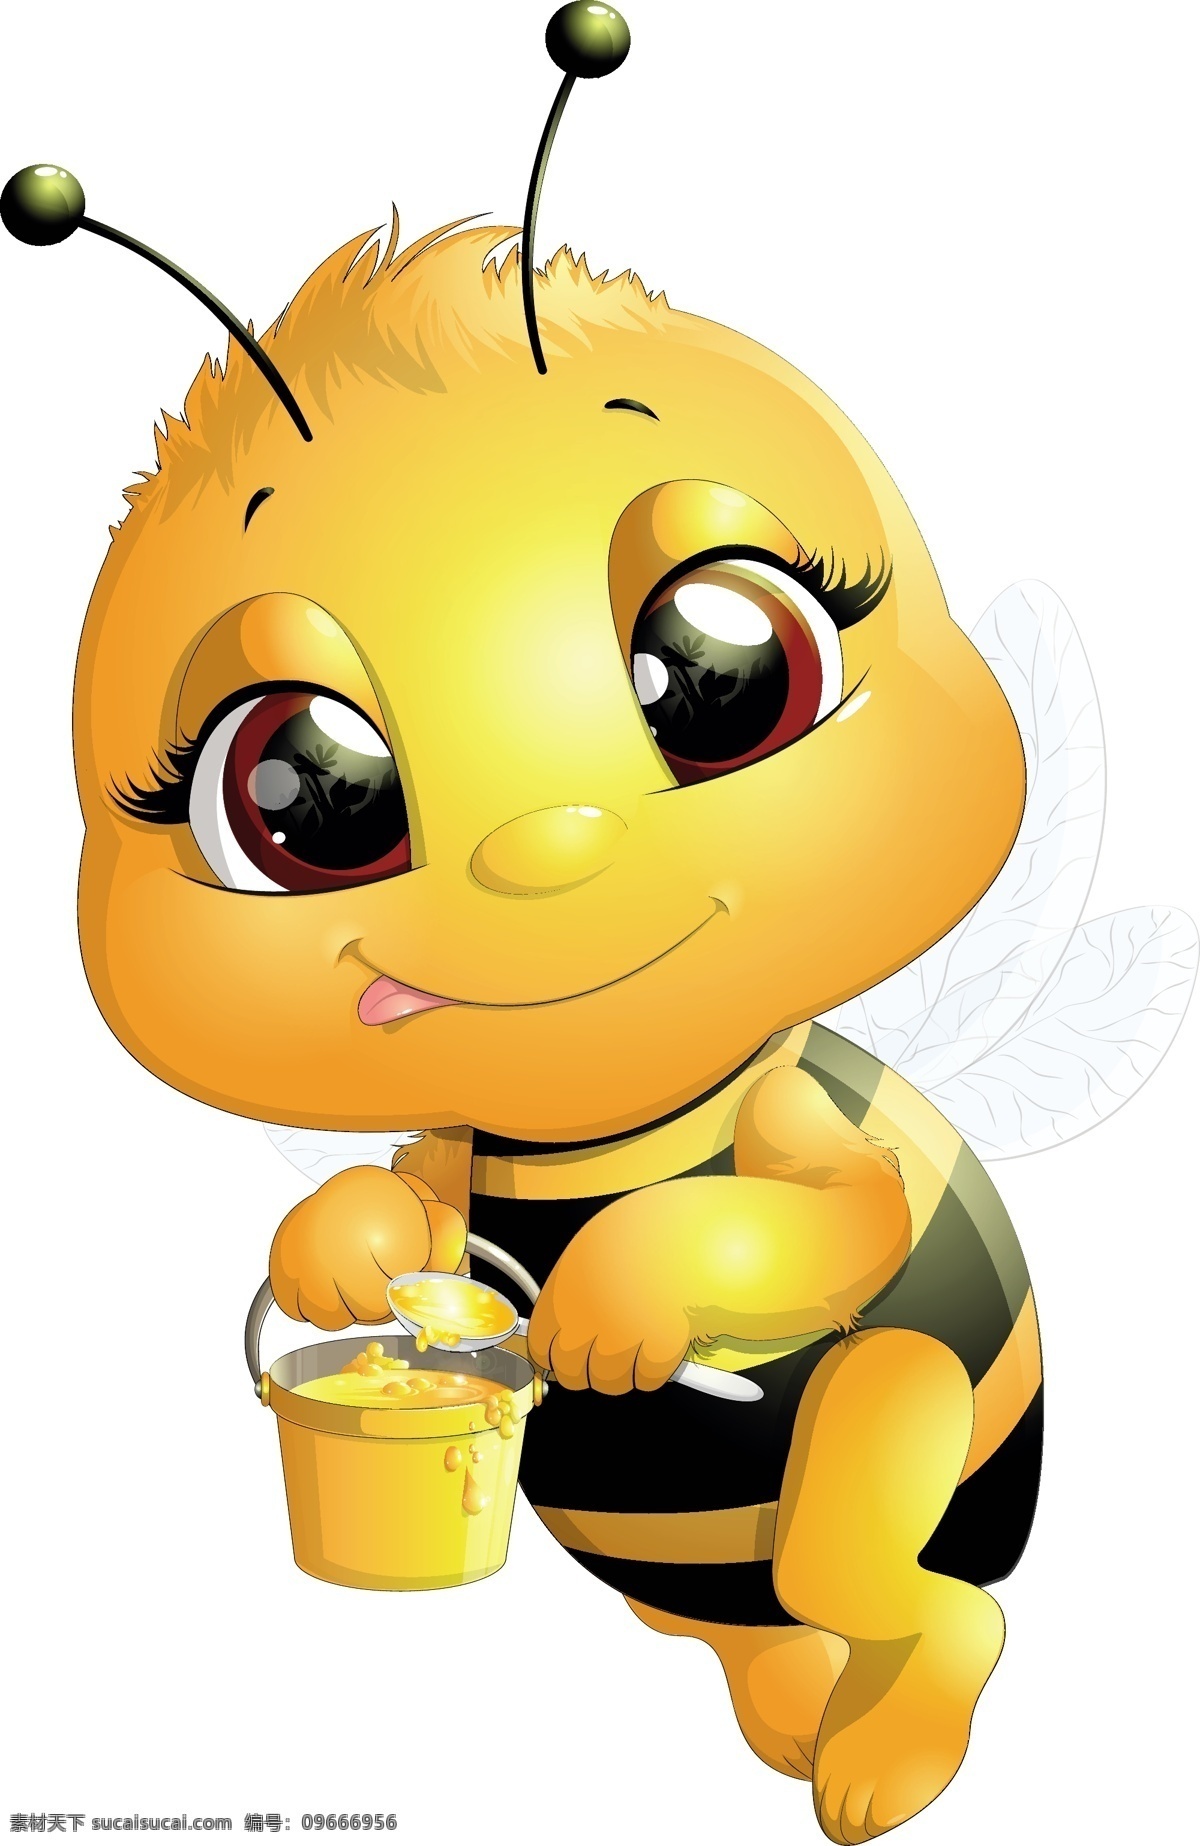 小蜜蜂 蜜蜂 蜂巢 昆虫 玻璃罐 密封罐 搅拌棍 丝带 蝴蝶结 坛子 蜂蜜罐 罐子 蜂蜜标签 蜂蜜 蜂蜜展板 蜂蜜广告 蜂王浆 蜂蜜插画 蜂蜜卡通 蜂蜜文化 天然蜂蜜 蜂蜜产品 蜂蜜素材 自然蜂蜜 蜂蜜图片 蜂蜜养殖 营养 健康 养生 花朵 一坛蜂蜜 卡通蜂蜜图片 矢量蜂蜜 矢量蜜蜂 采蜜